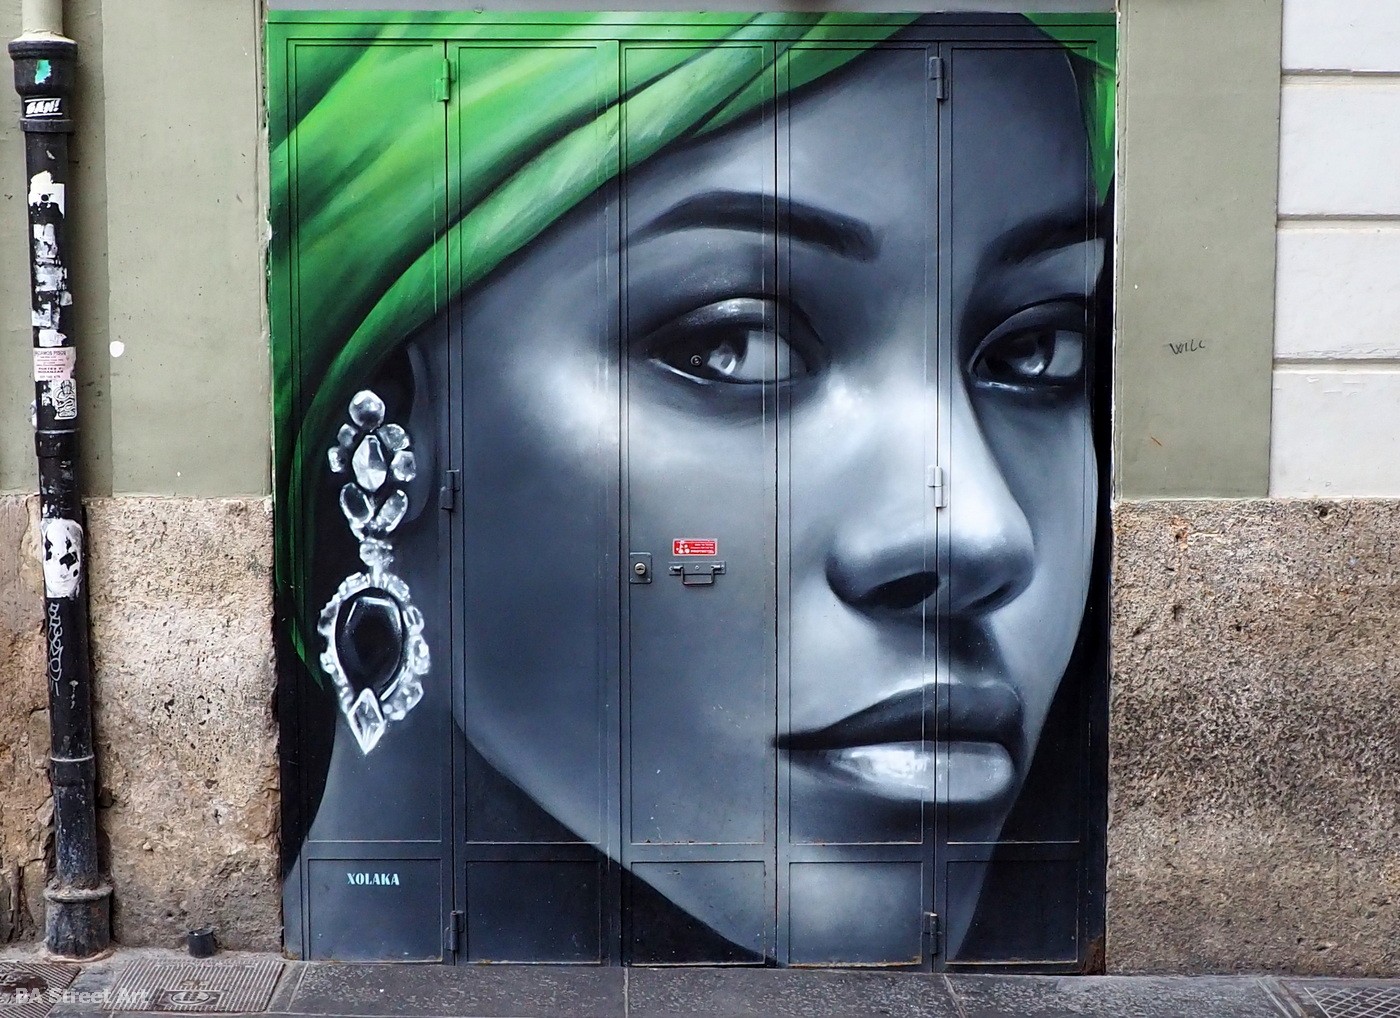 Xolaka mural Valencia street art graffiti spain españa aerosol art graff mujer woman buenosairesstreetart.com 